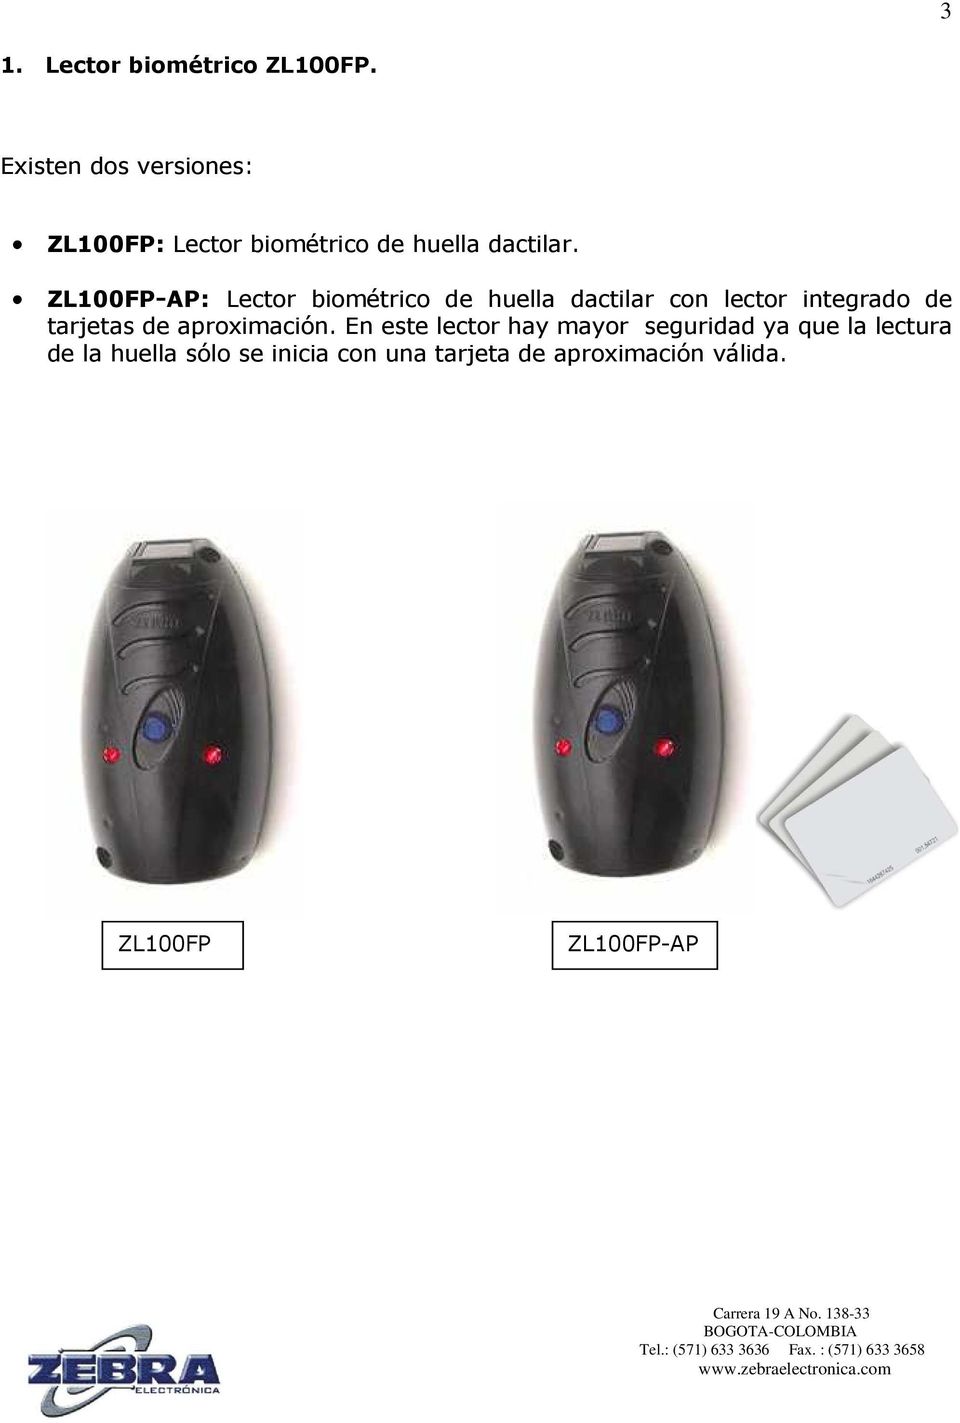 ZL100FP-AP: Lector biométrico de huella dactilar con lector integrado de tarjetas de